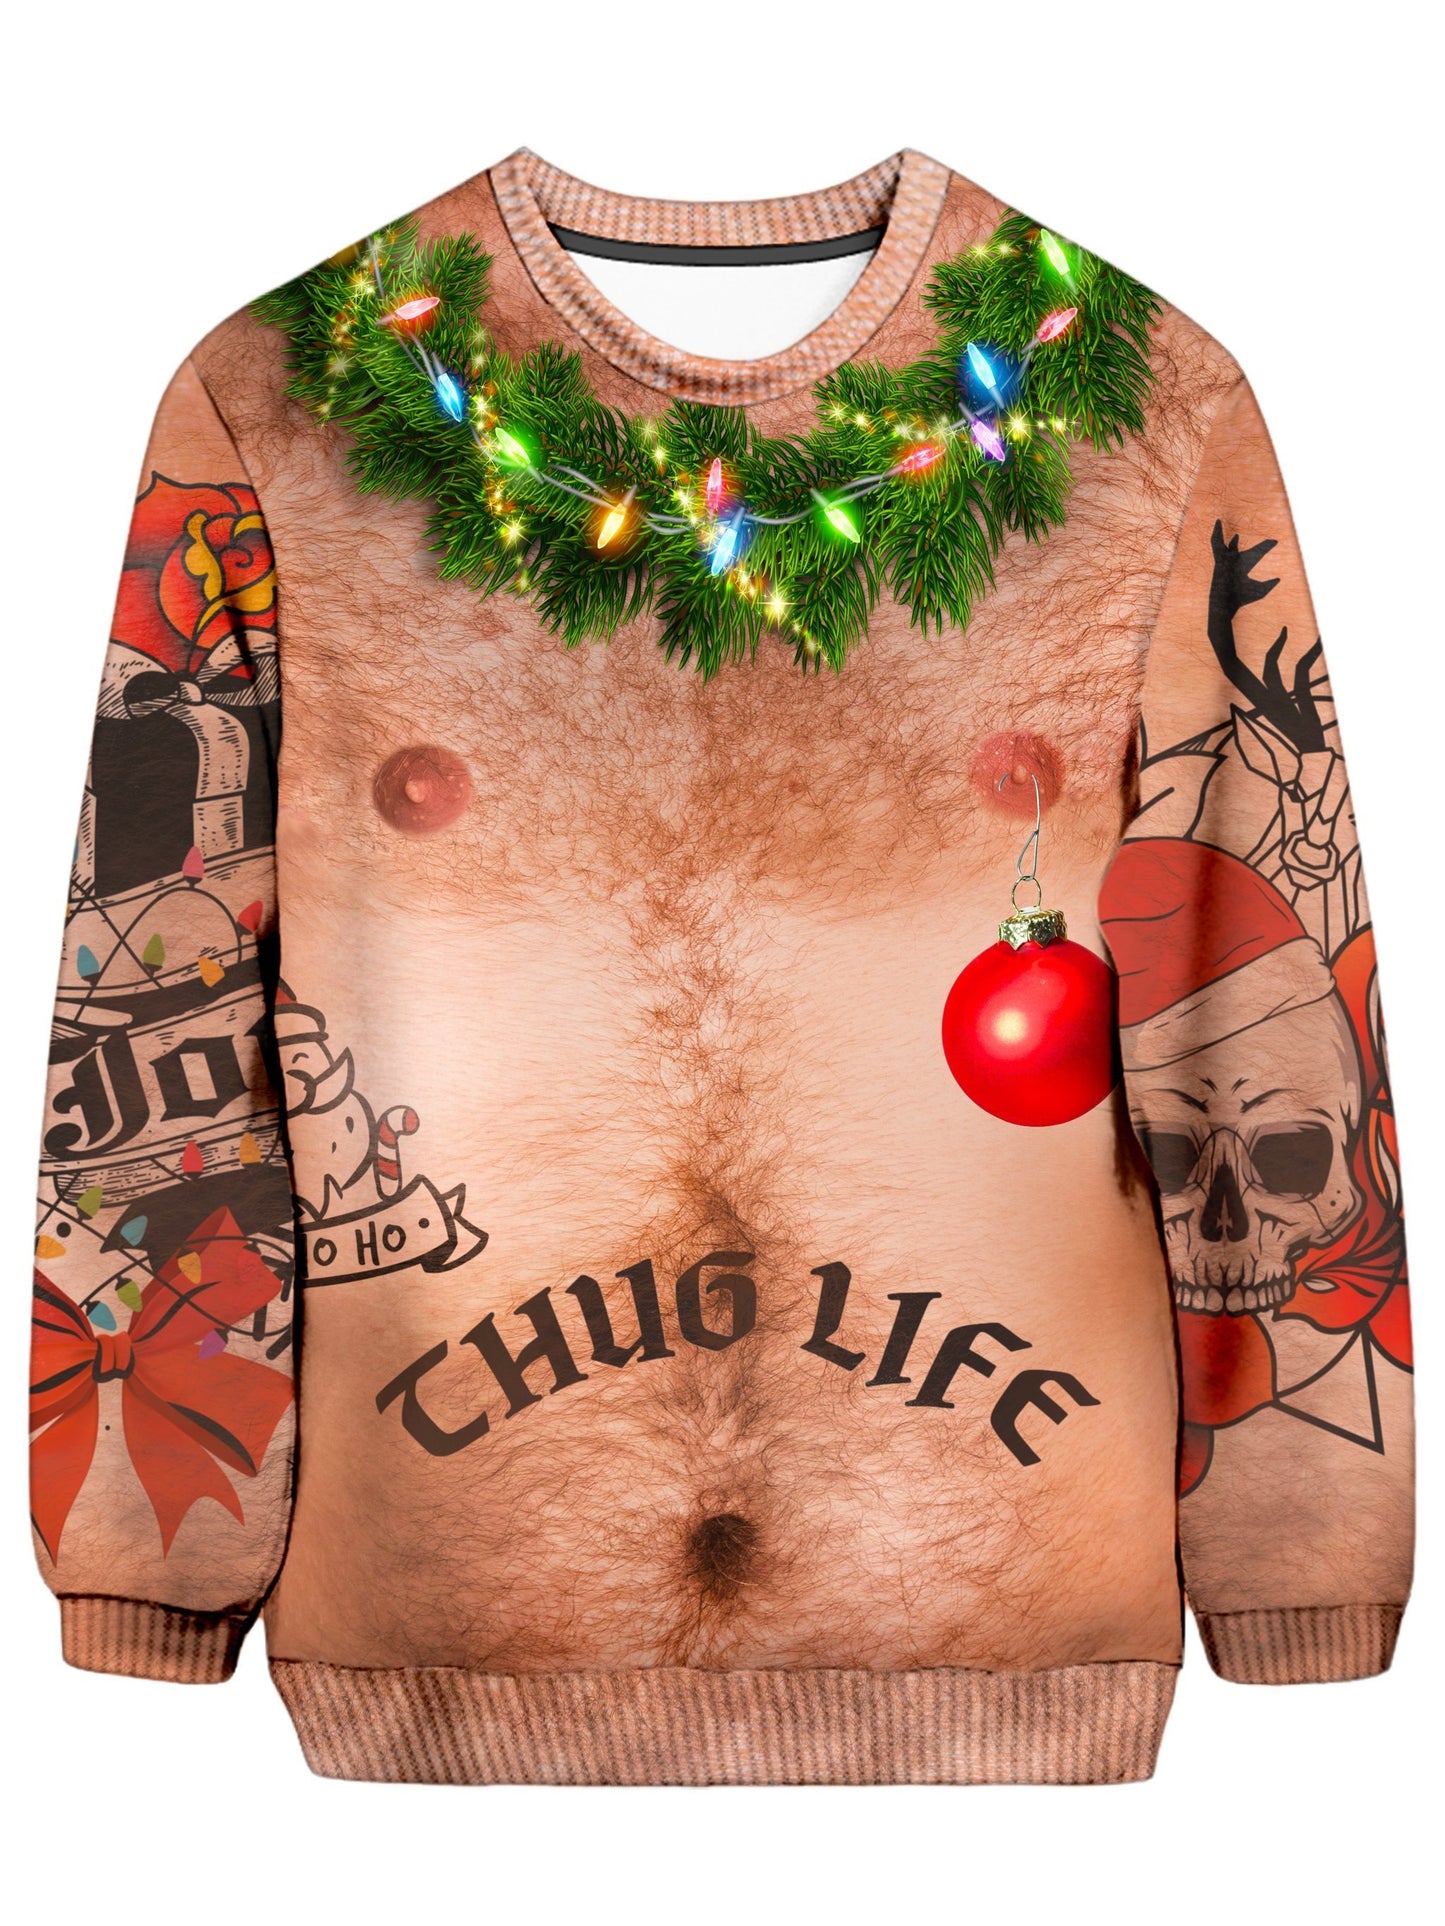 iEDM Thug Life Ugly Christmas Sweatshirt - iEDM